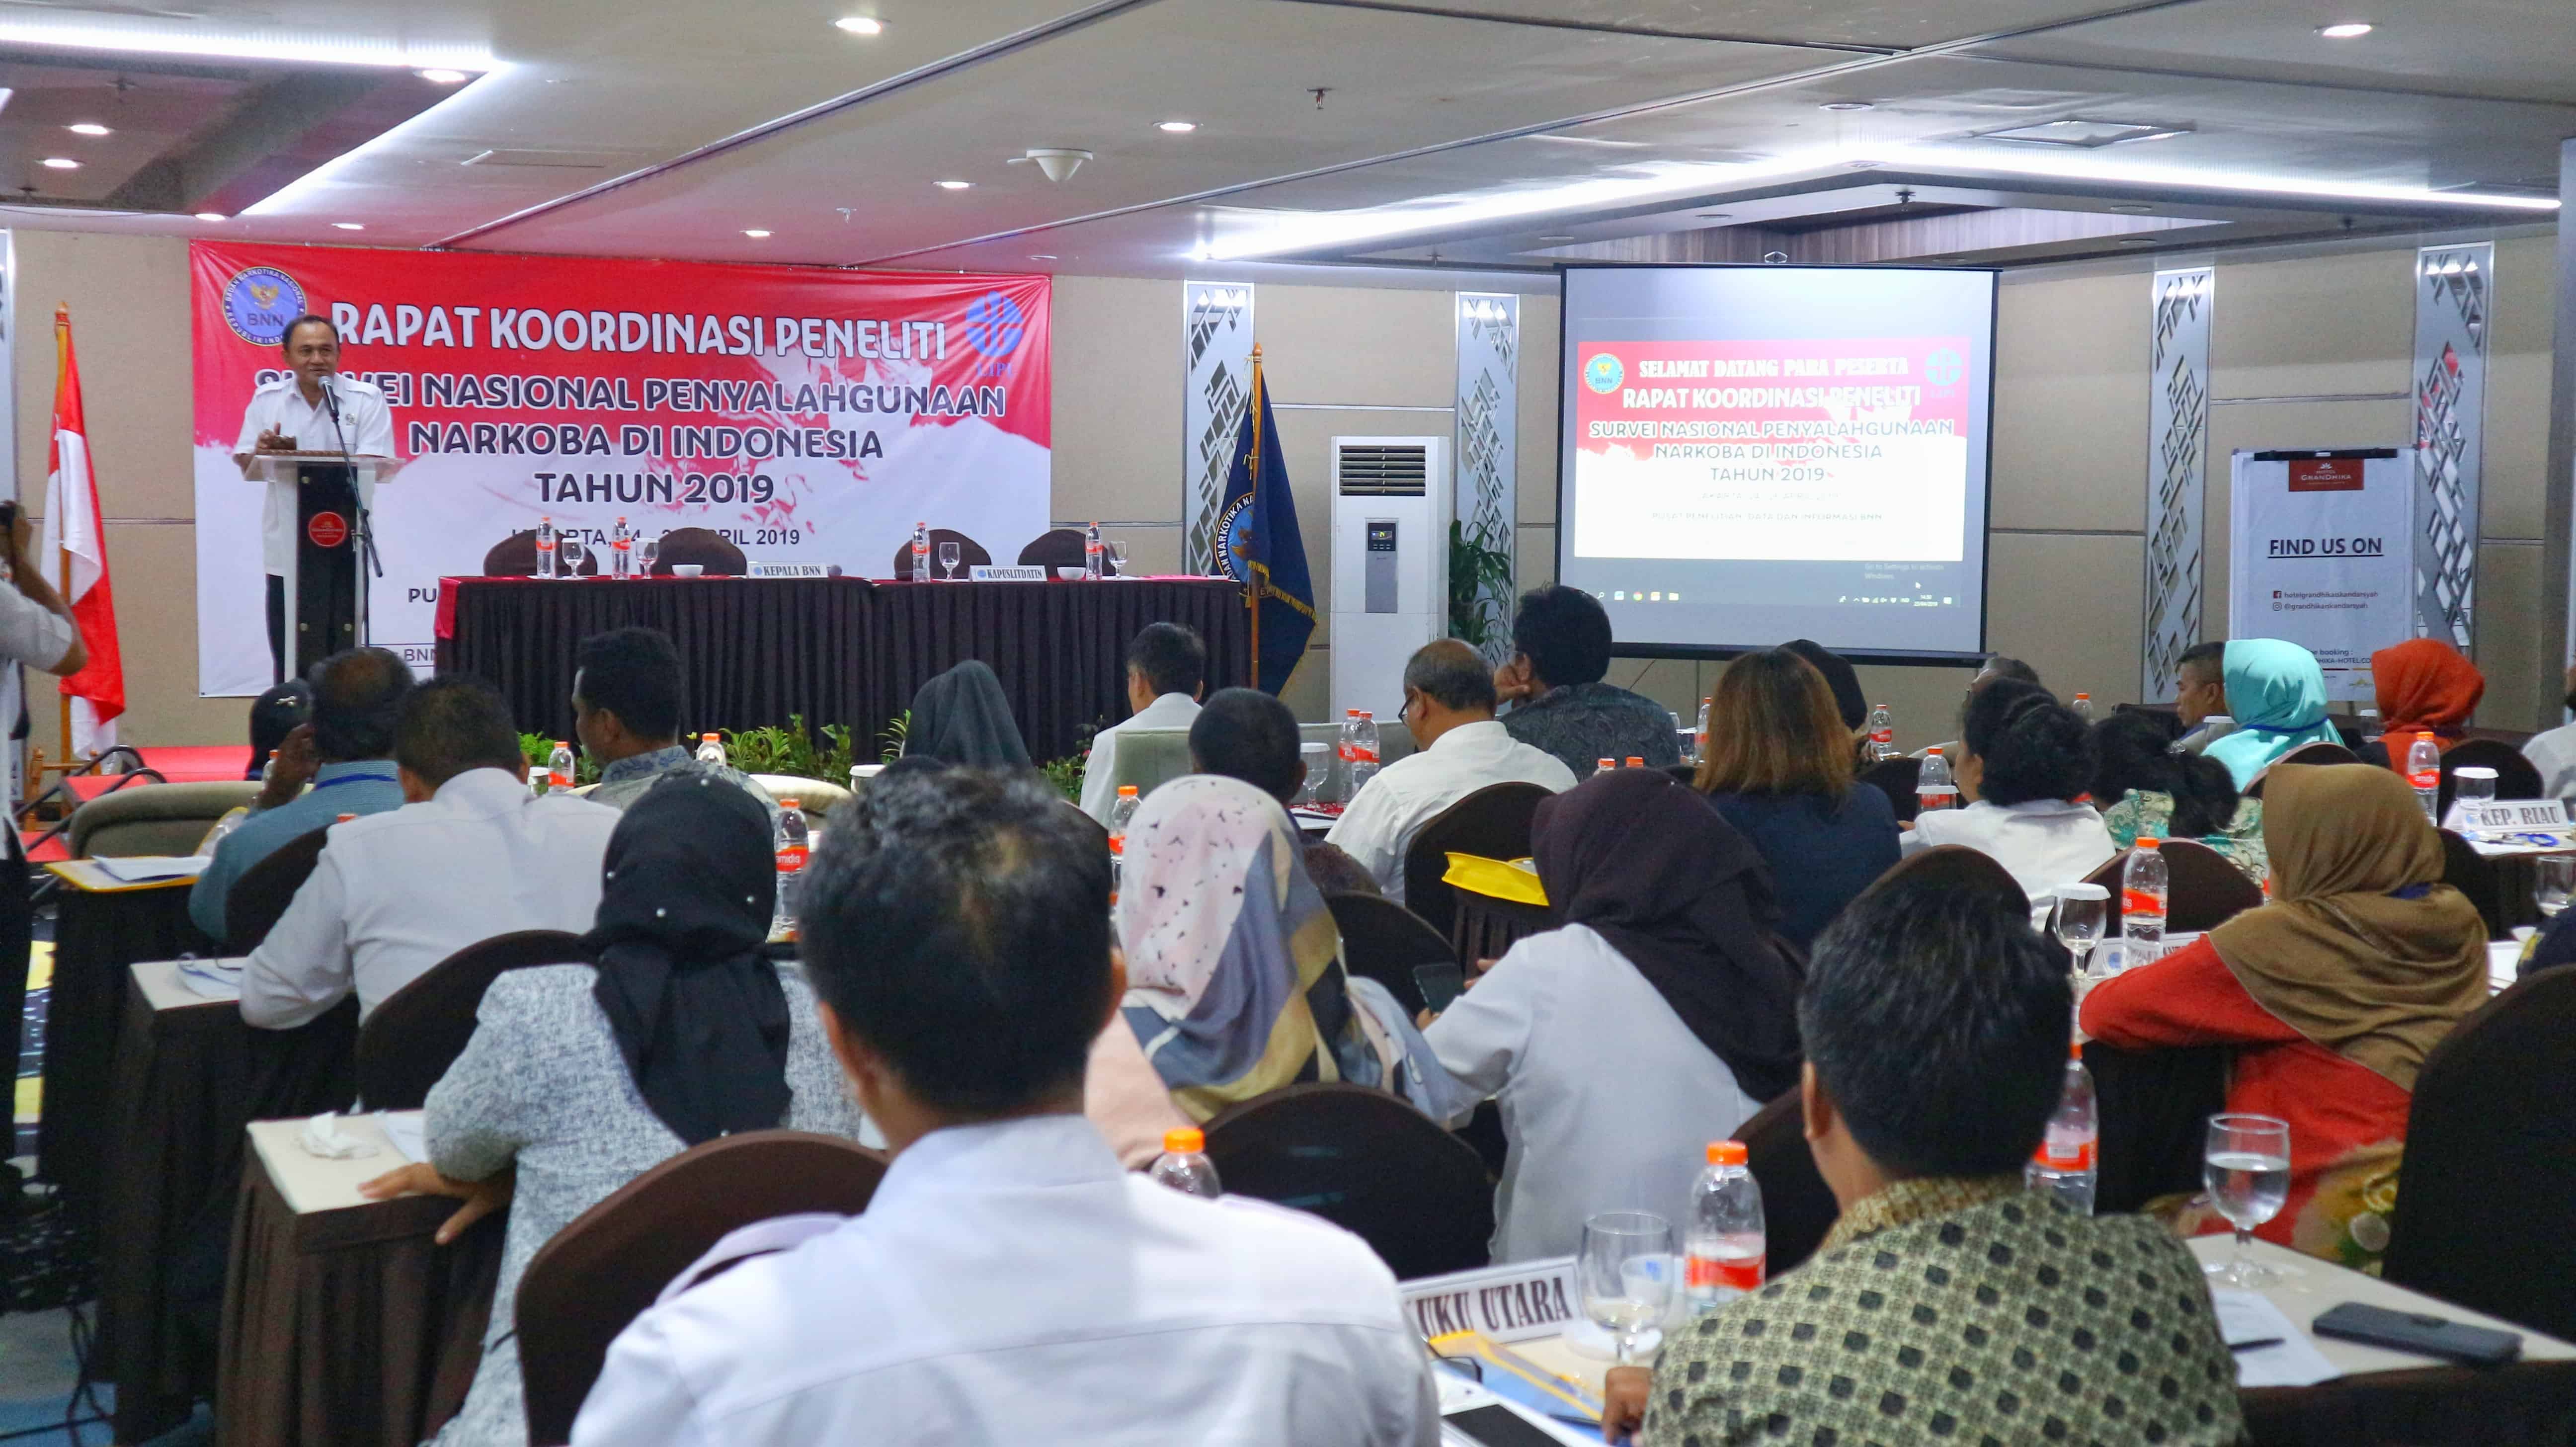 Rapat Koordinasi Peneliti Survei Nasional Penyalahgunaan Narkoba di Indonesia Tahun 2019